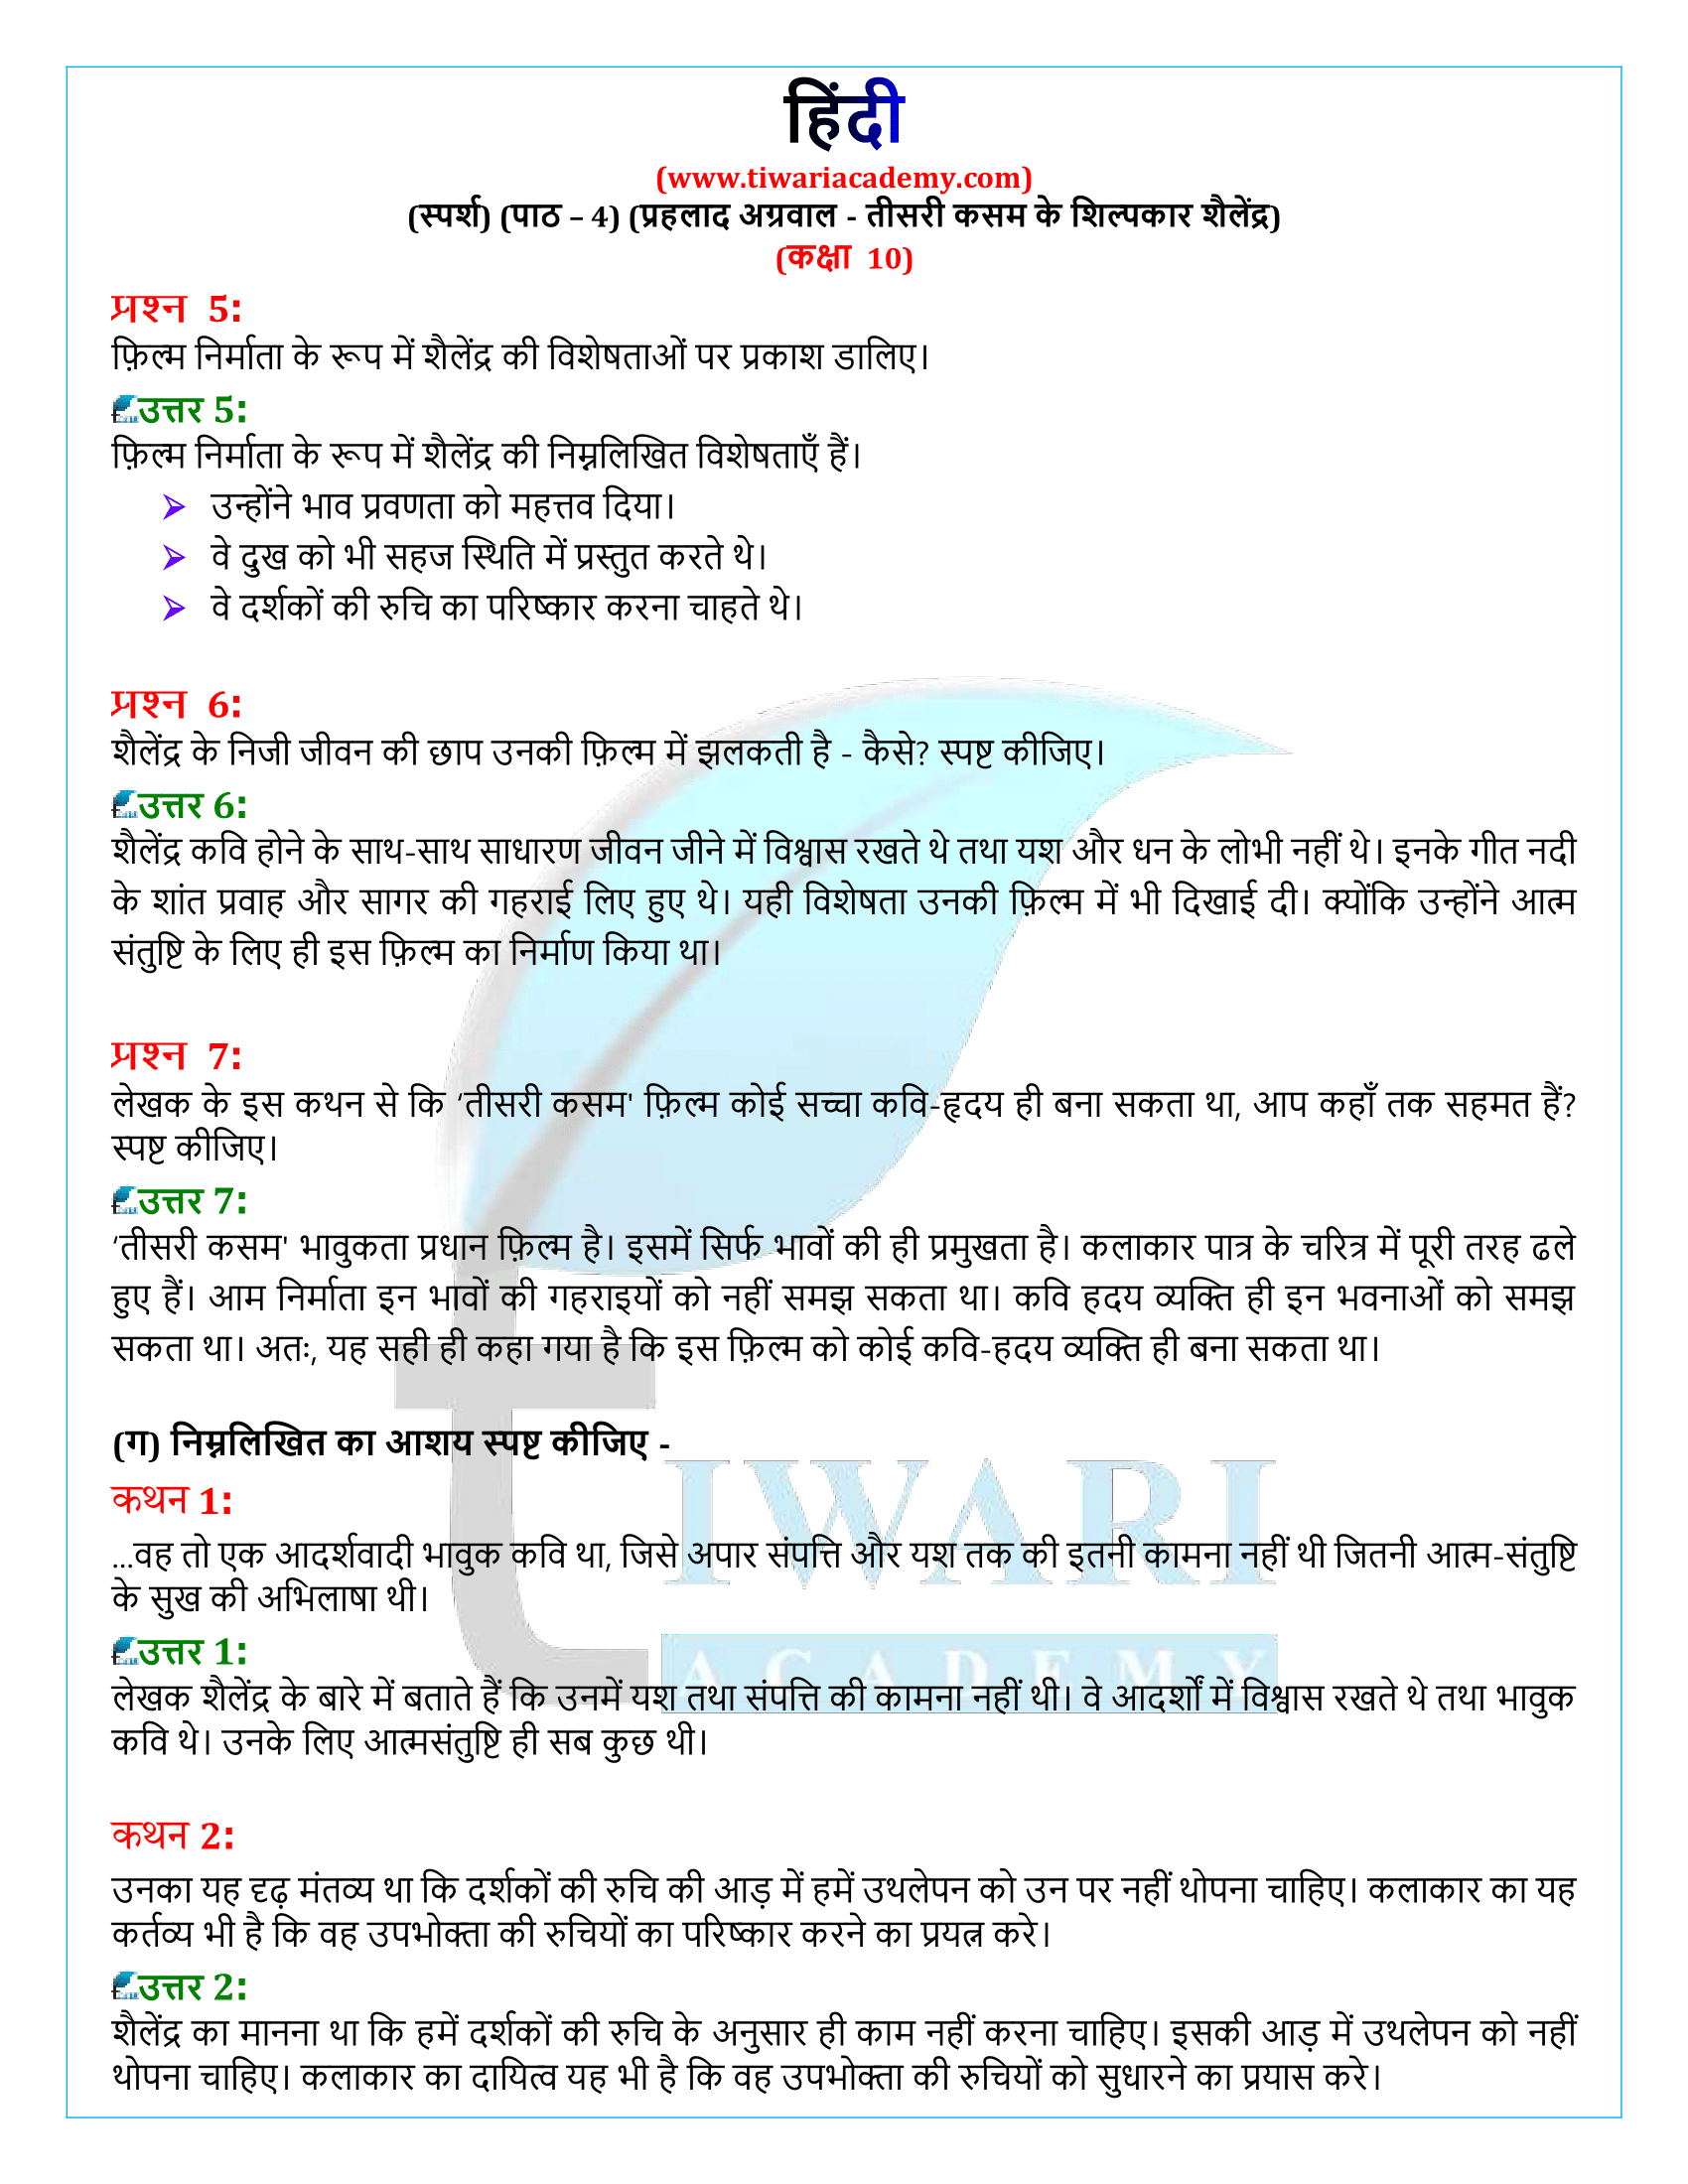 कक्षा 10 हिंदी स्पर्श गद्य अध्याय 4 के प्रश्न